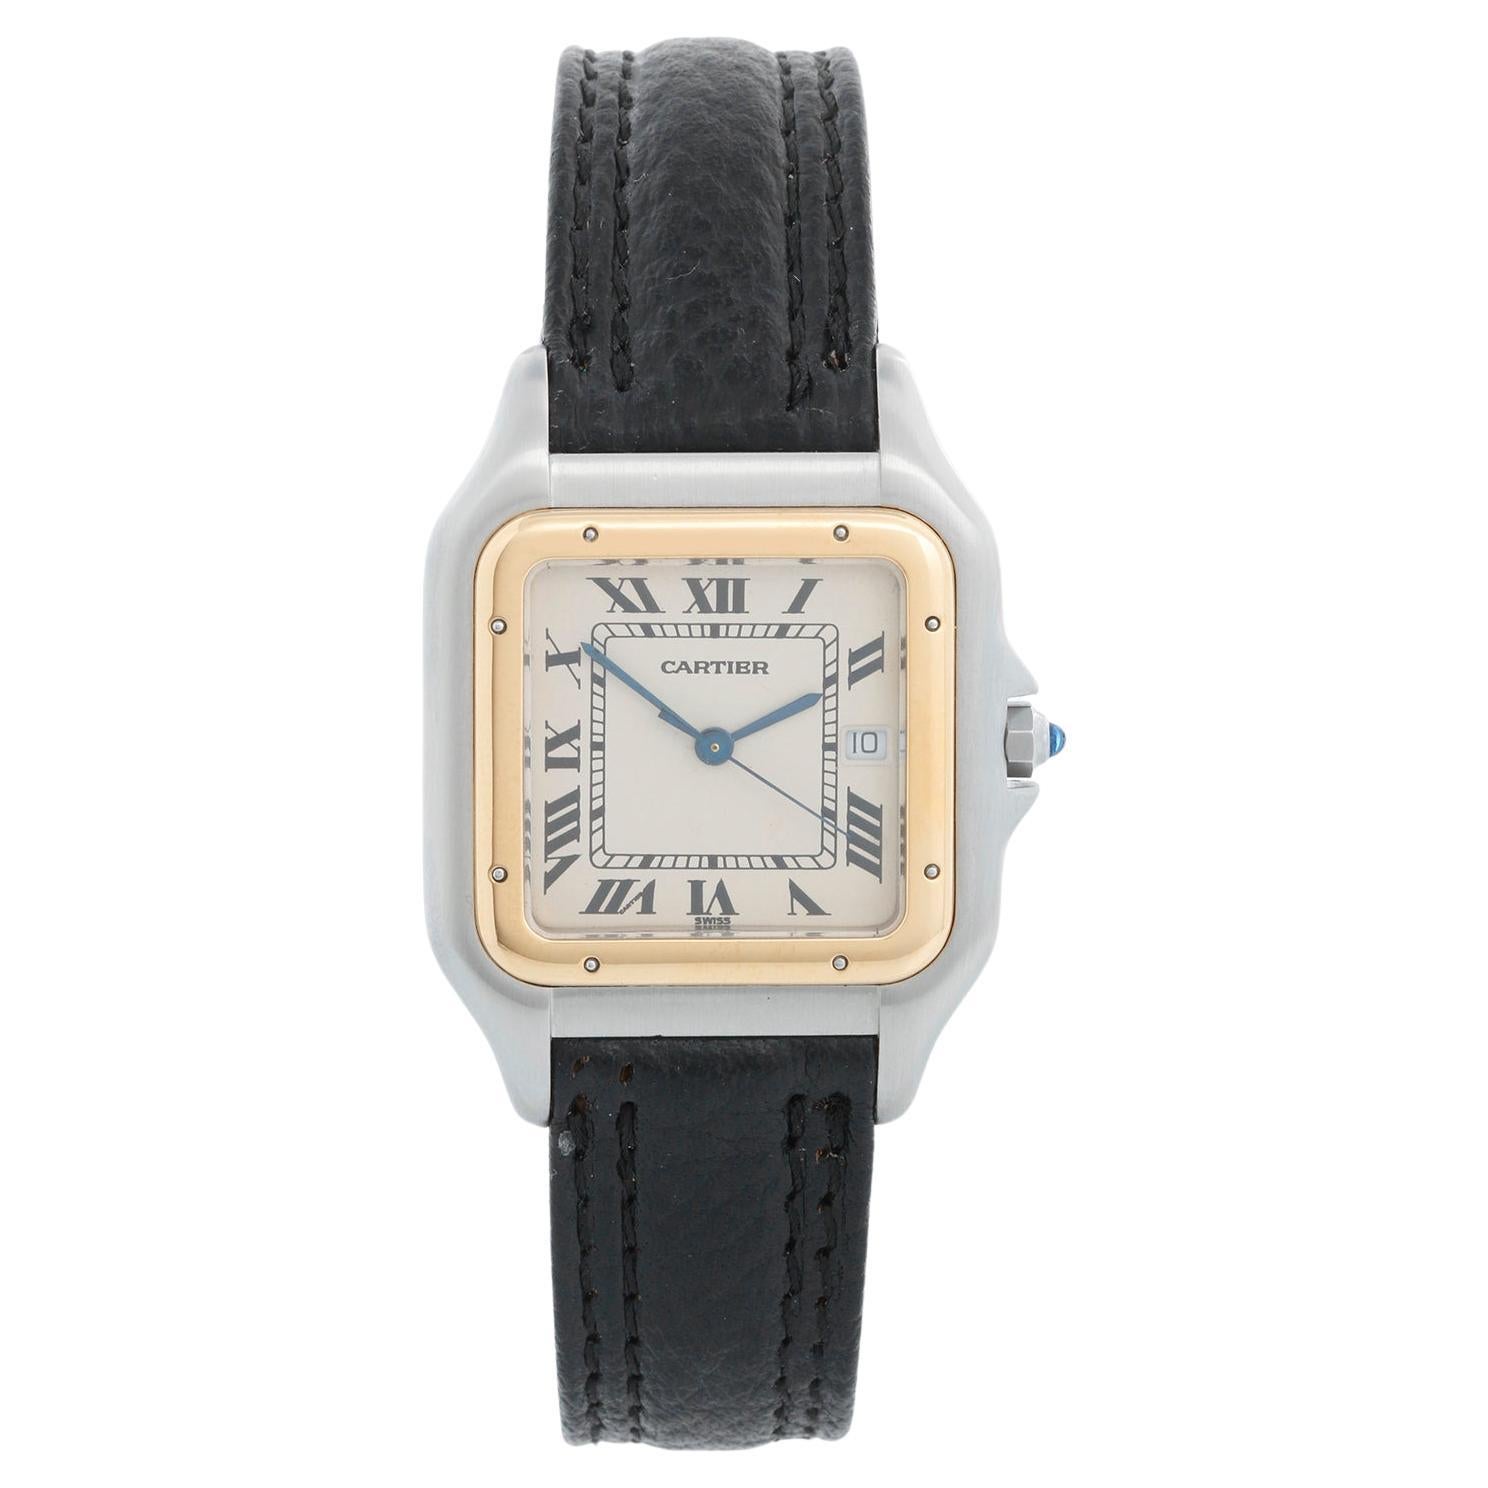 Is Cartier a luxury watch?